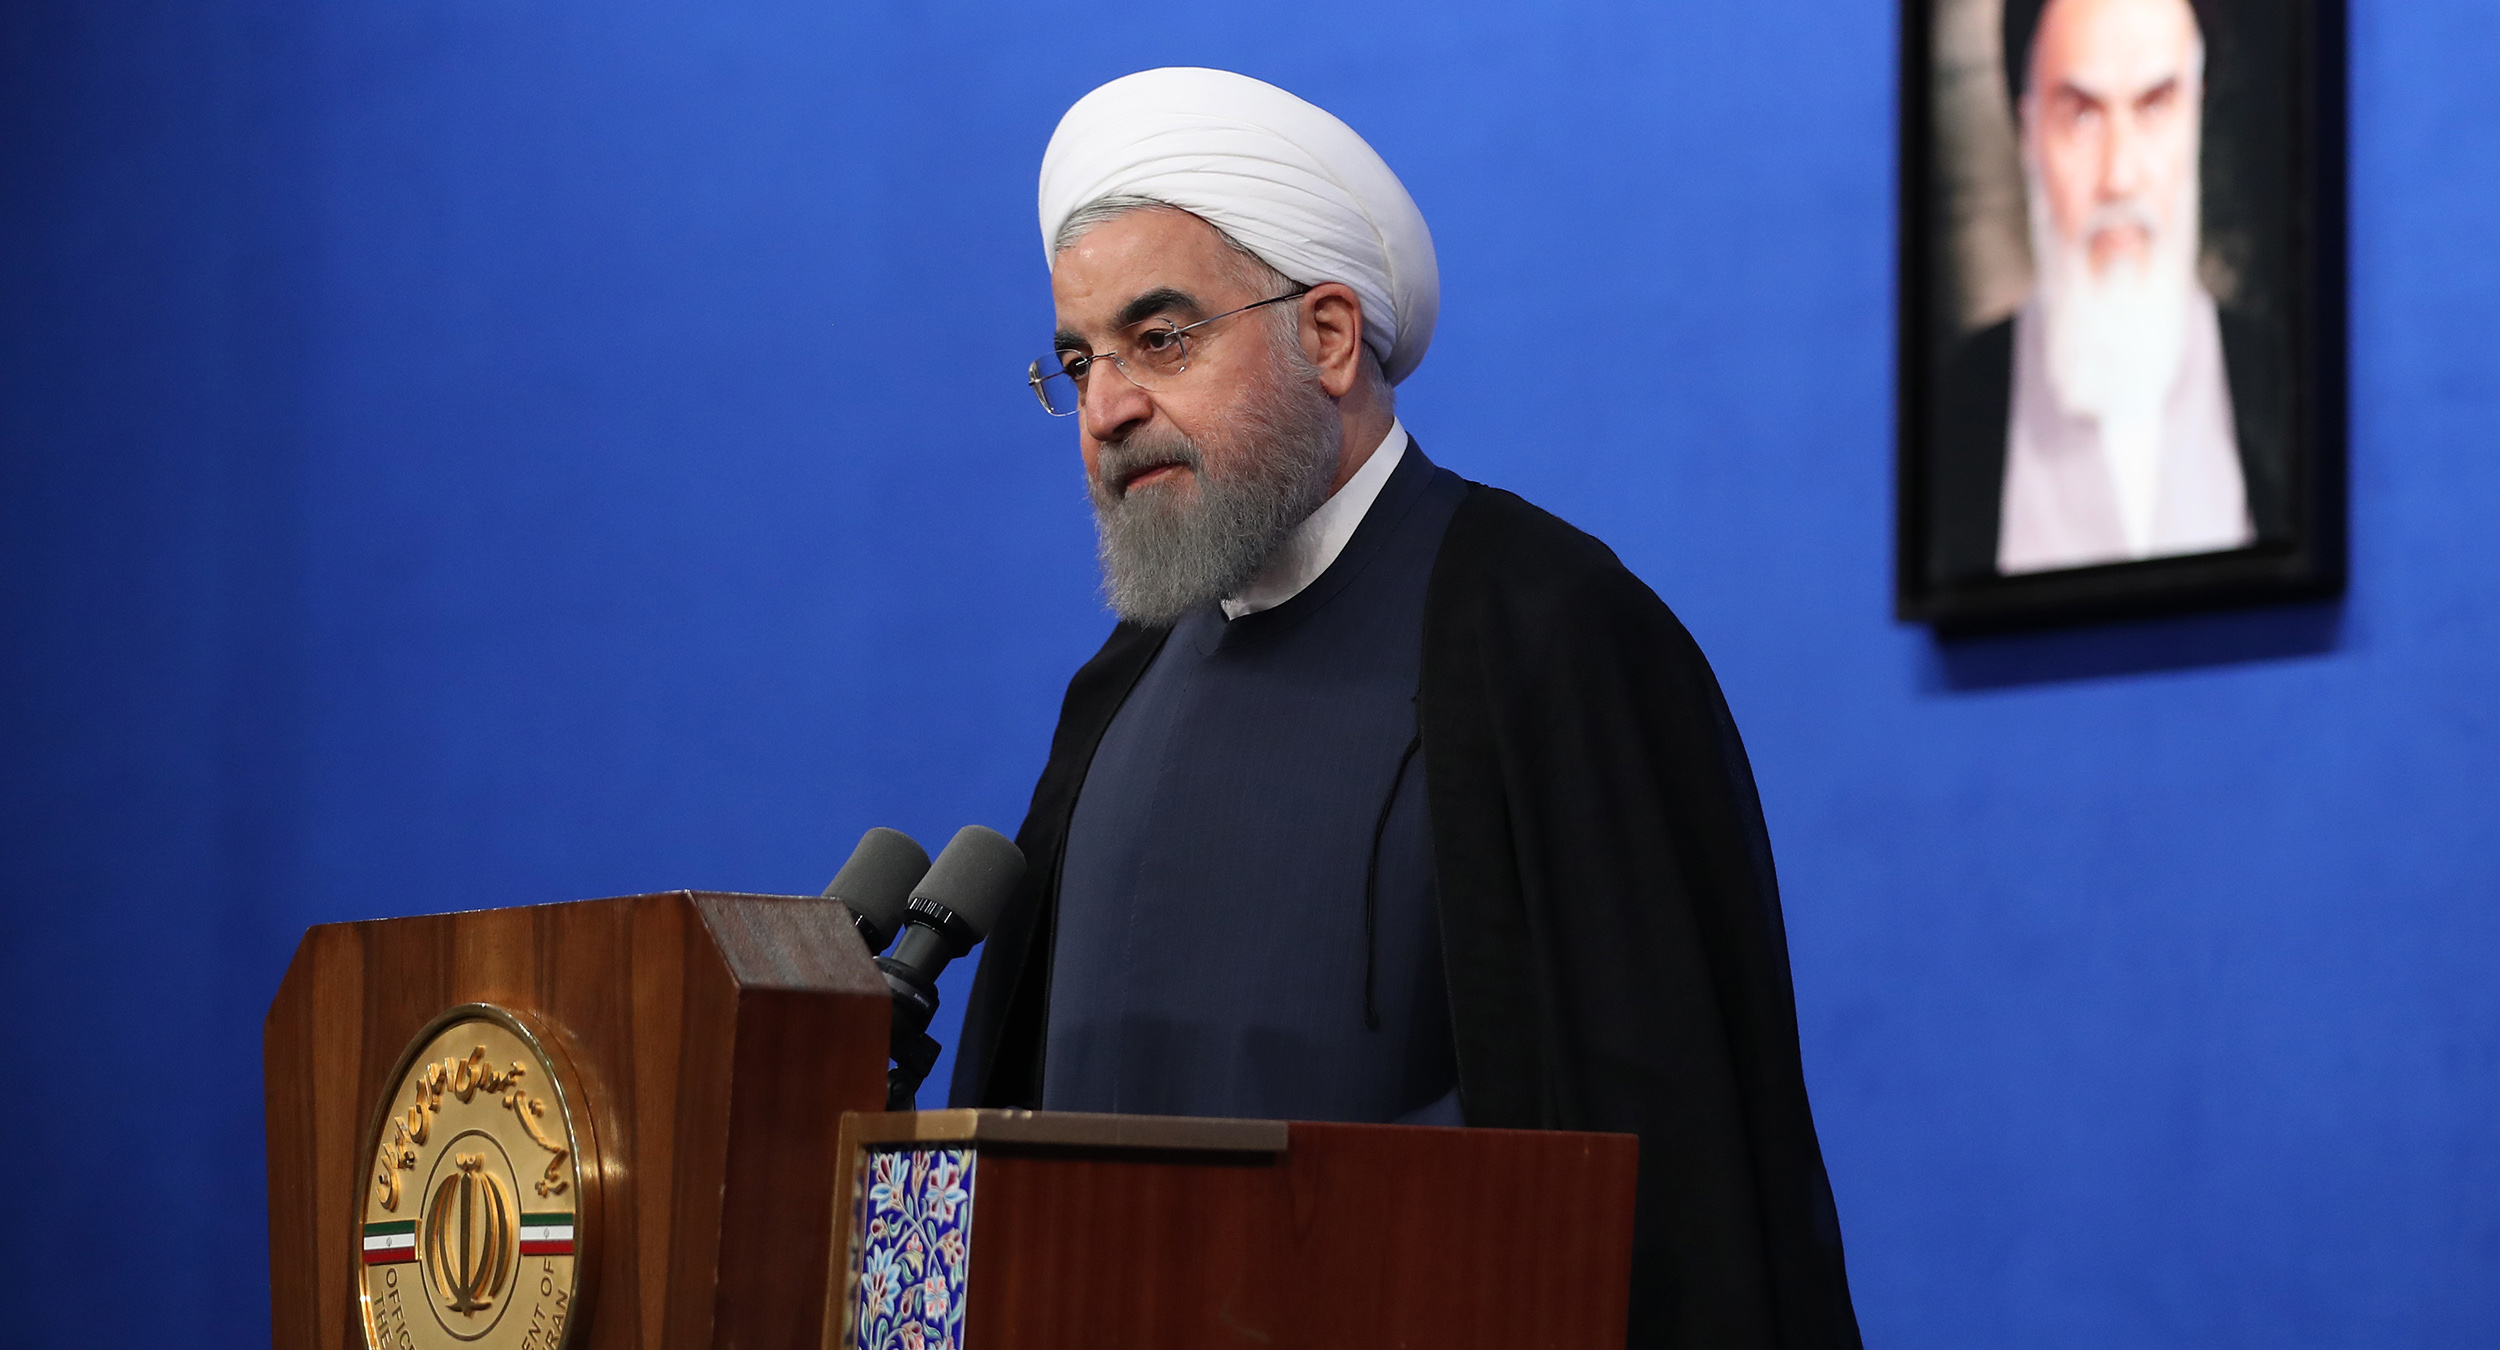 روحانی: پرتاب موشک از سوی سپاه به محل استقرار داعش کاملاً درست، ‏بجا و ضروری بود / اگر تصمیمی می گیریم که به یک کشور یا مکانی موشک بزنیم، ‏این تصمیمات در حوزه امنیت ملی ما قرار دارد